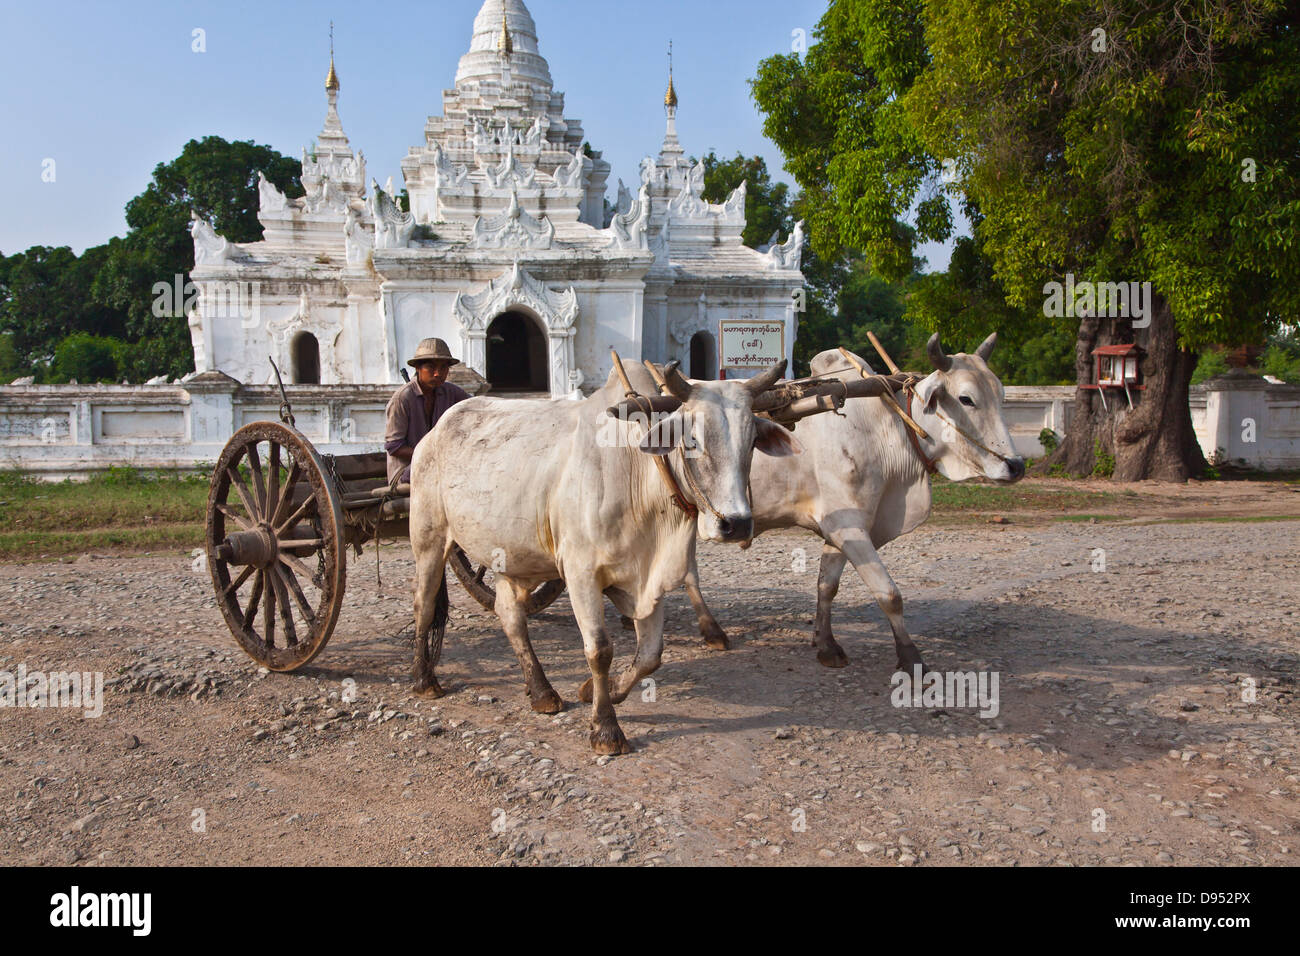 OX CART e santuario buddista in INWA storico che è servita come regni birmani di capitale per 400 anni - Myanmar Foto Stock